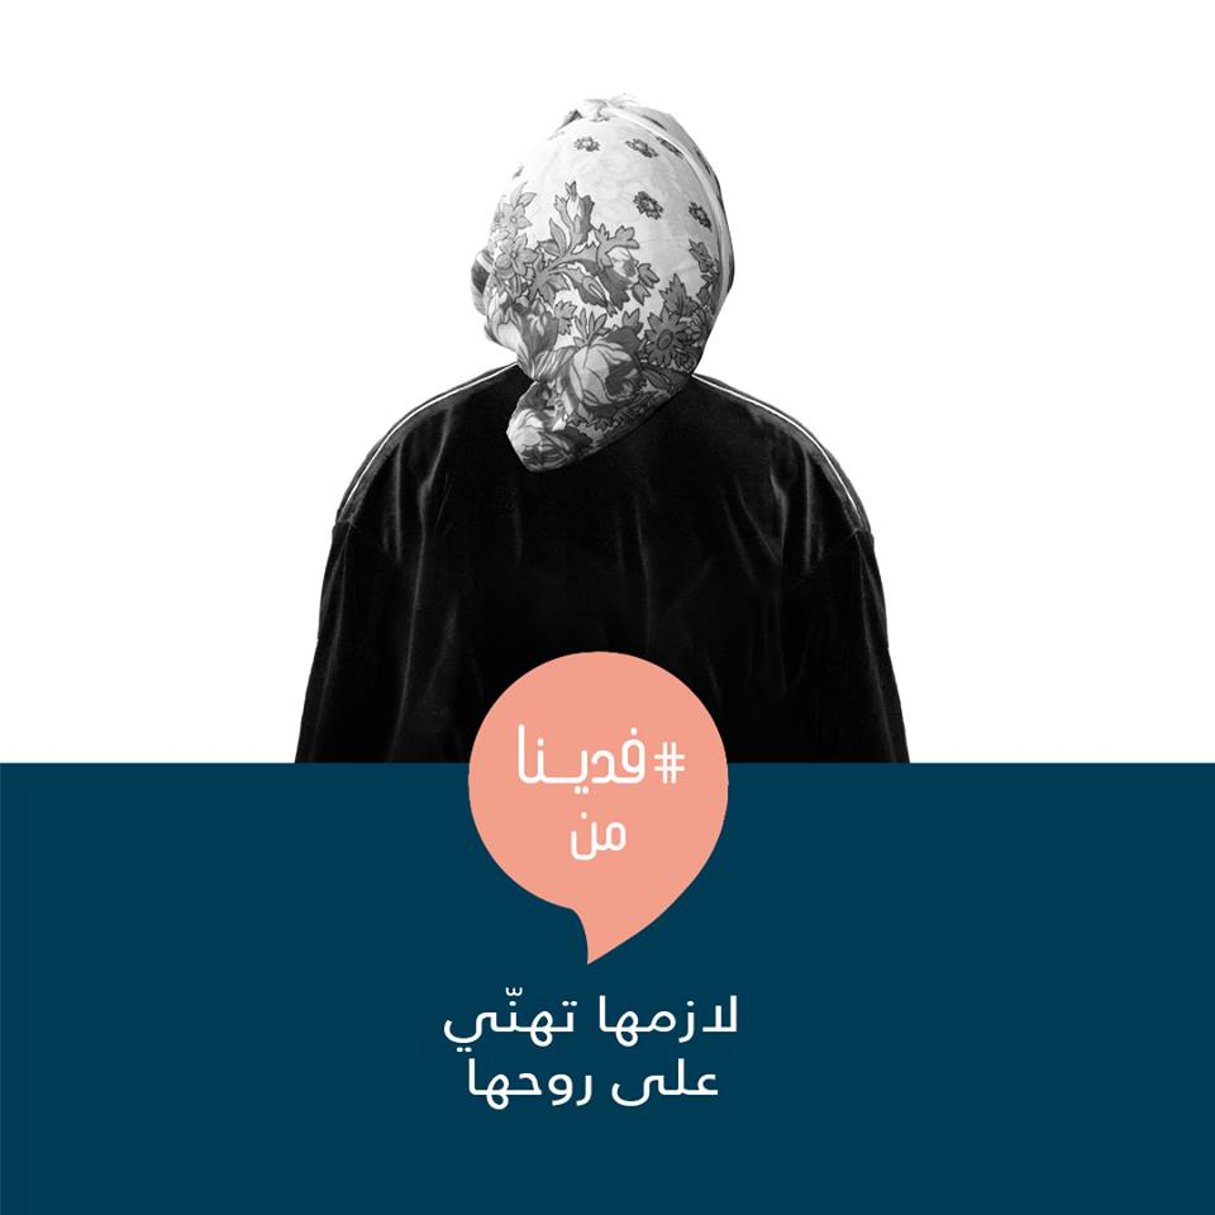 L’une des affiches de la campagne, portant le slogan « Faddina » (« On en a marre de… ») [bulle] et le texte « Elle doit veiller à la stabilité de sa famille ». © DR/ ONU Tunisia